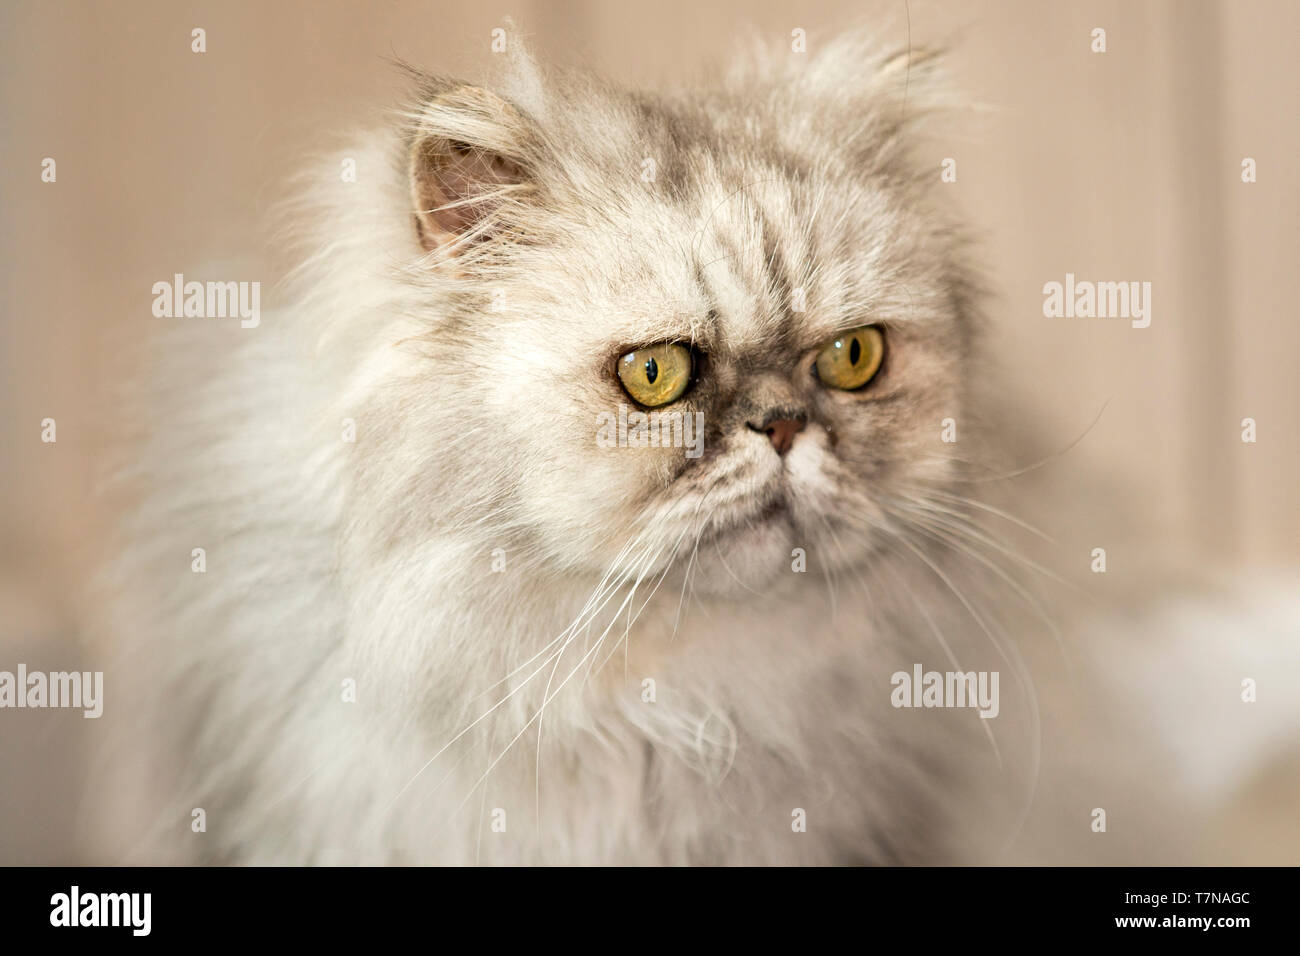 El persa Cat. El viejo persa gato mirando a la derecha. Países Bajos Foto de stock